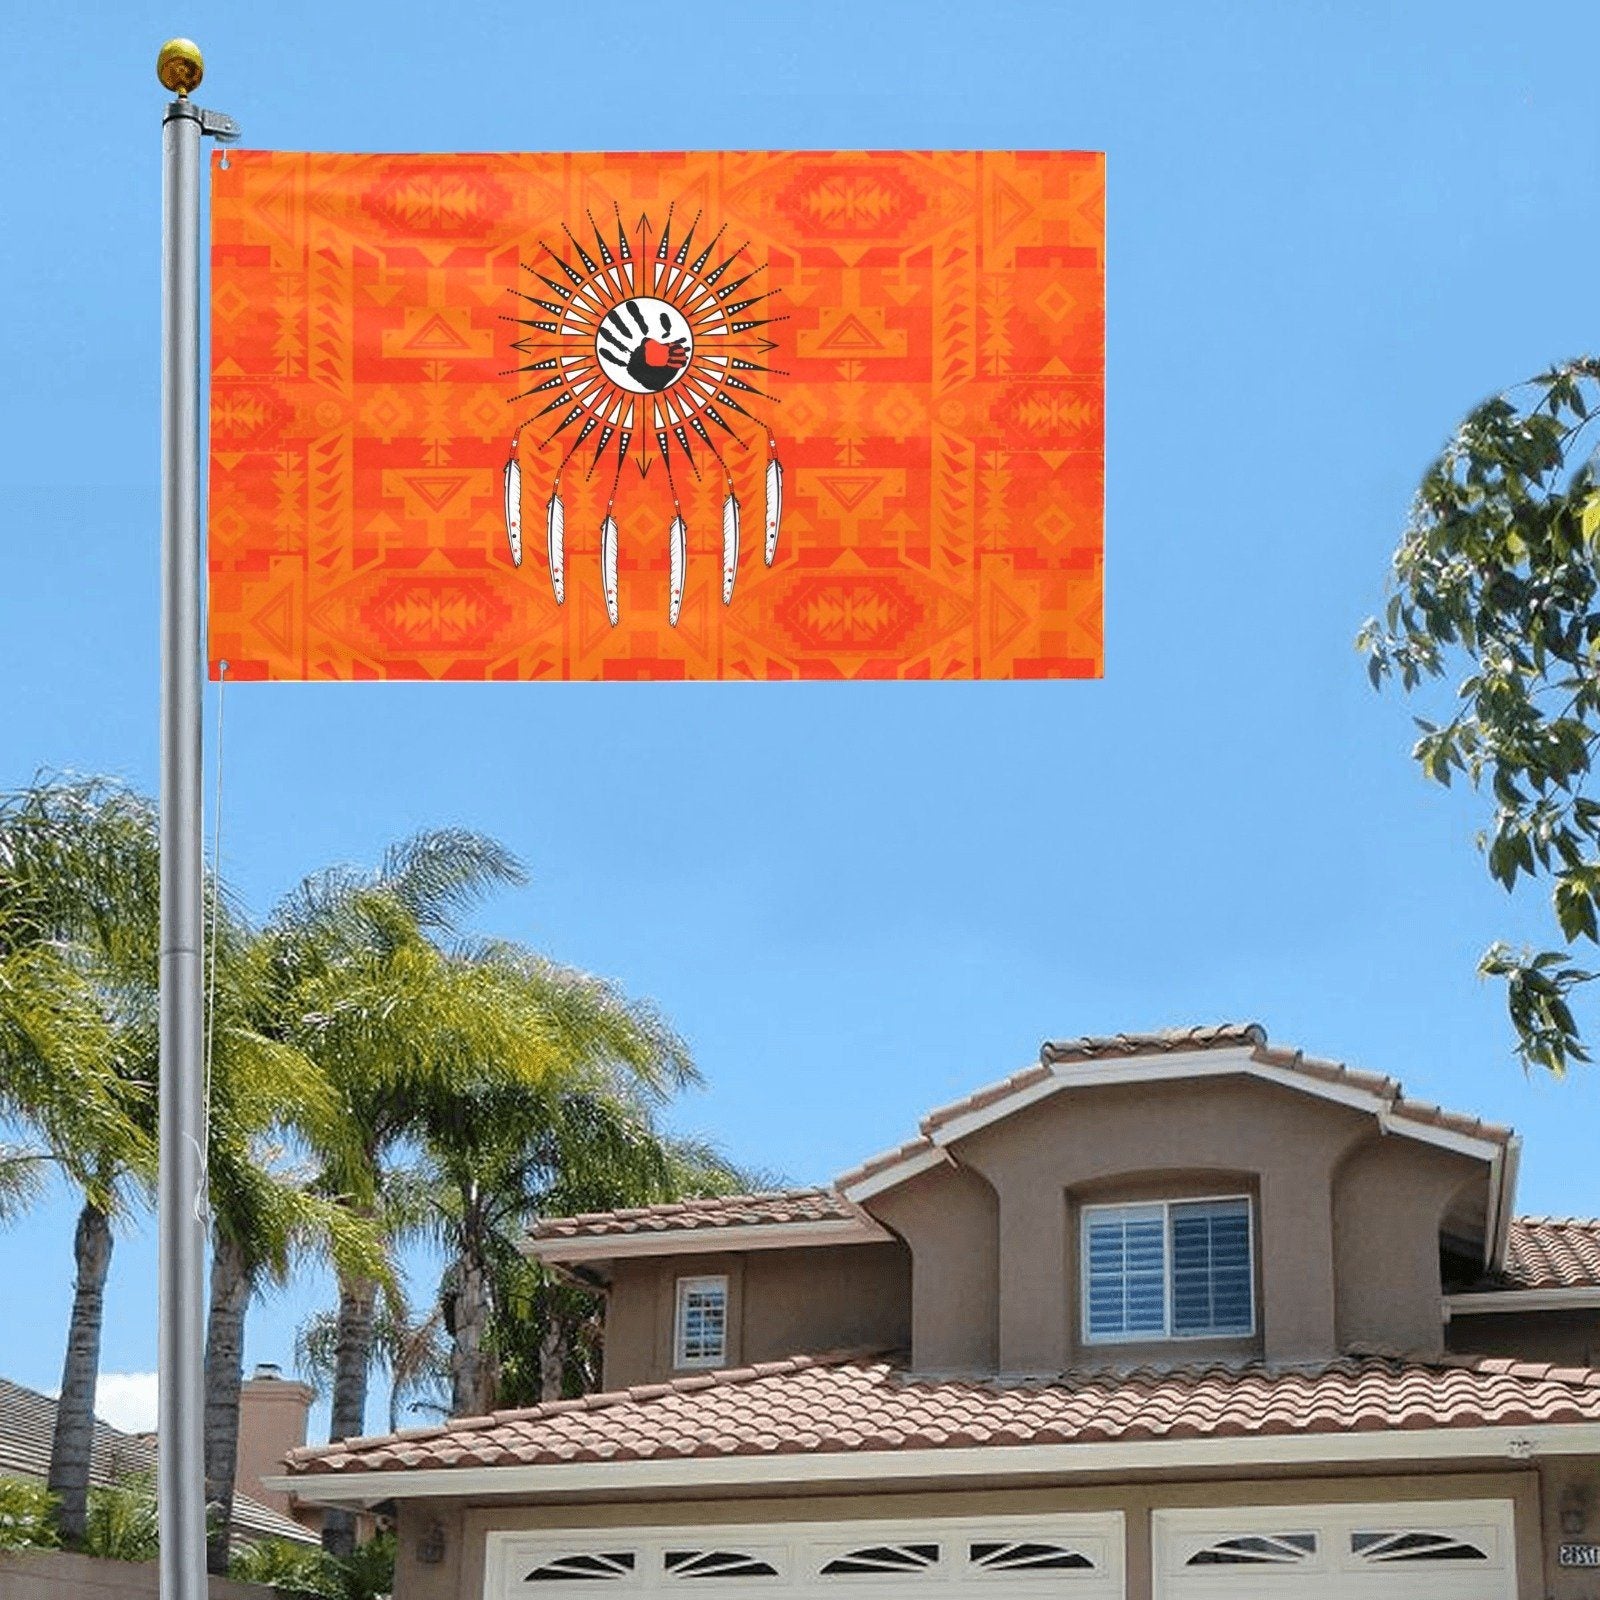 Chiefs Mountain Orange Feather Directions Garden Flag 59"x35" Garden Flag 59"x35" e-joyer 